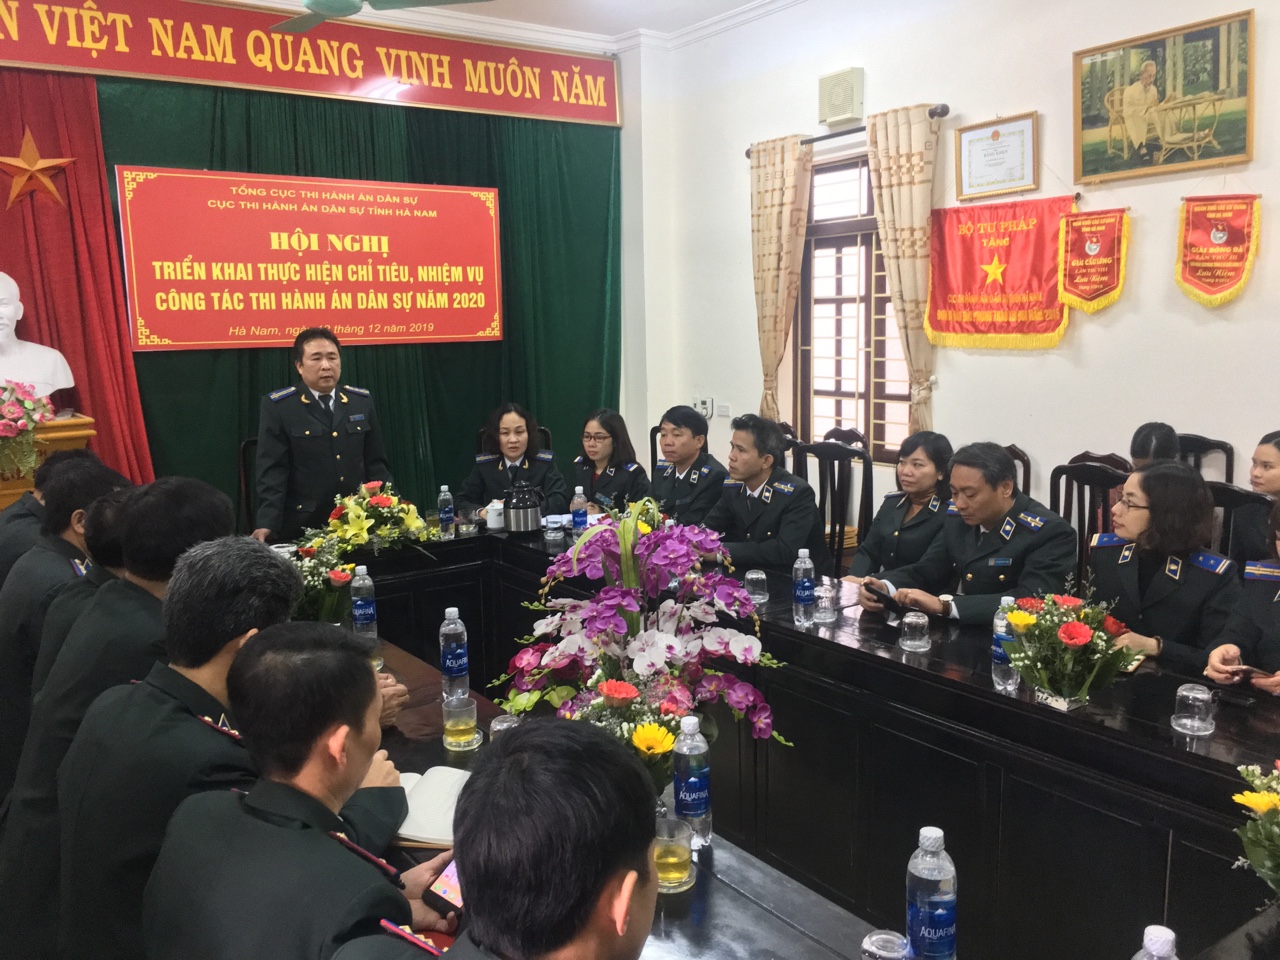 Cục Thi hành án dân sự tỉnh Hà Nam tổ chức Hội nghị triển khai công tác thi hành án dân sự, thi hành án hành chính năm 2020.